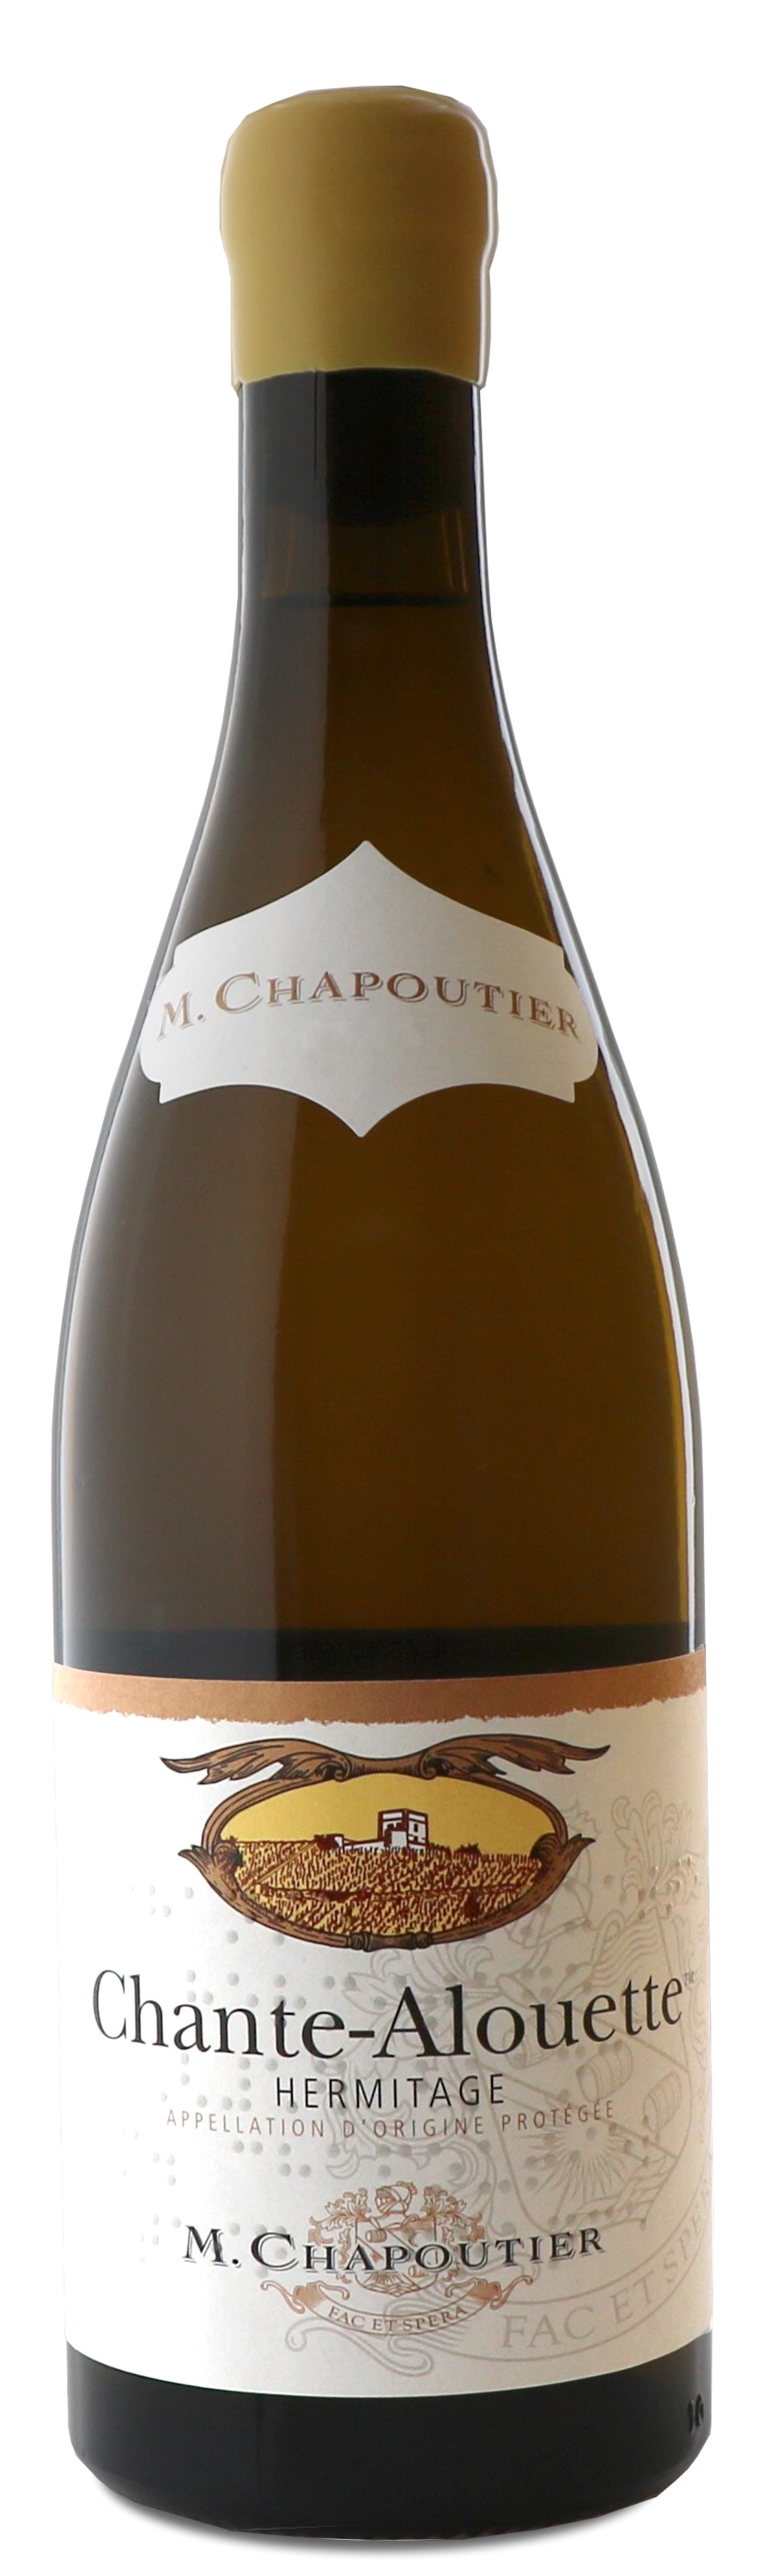 M. Chapoutier - Hermitage Chante-Alouette 2020 (750)